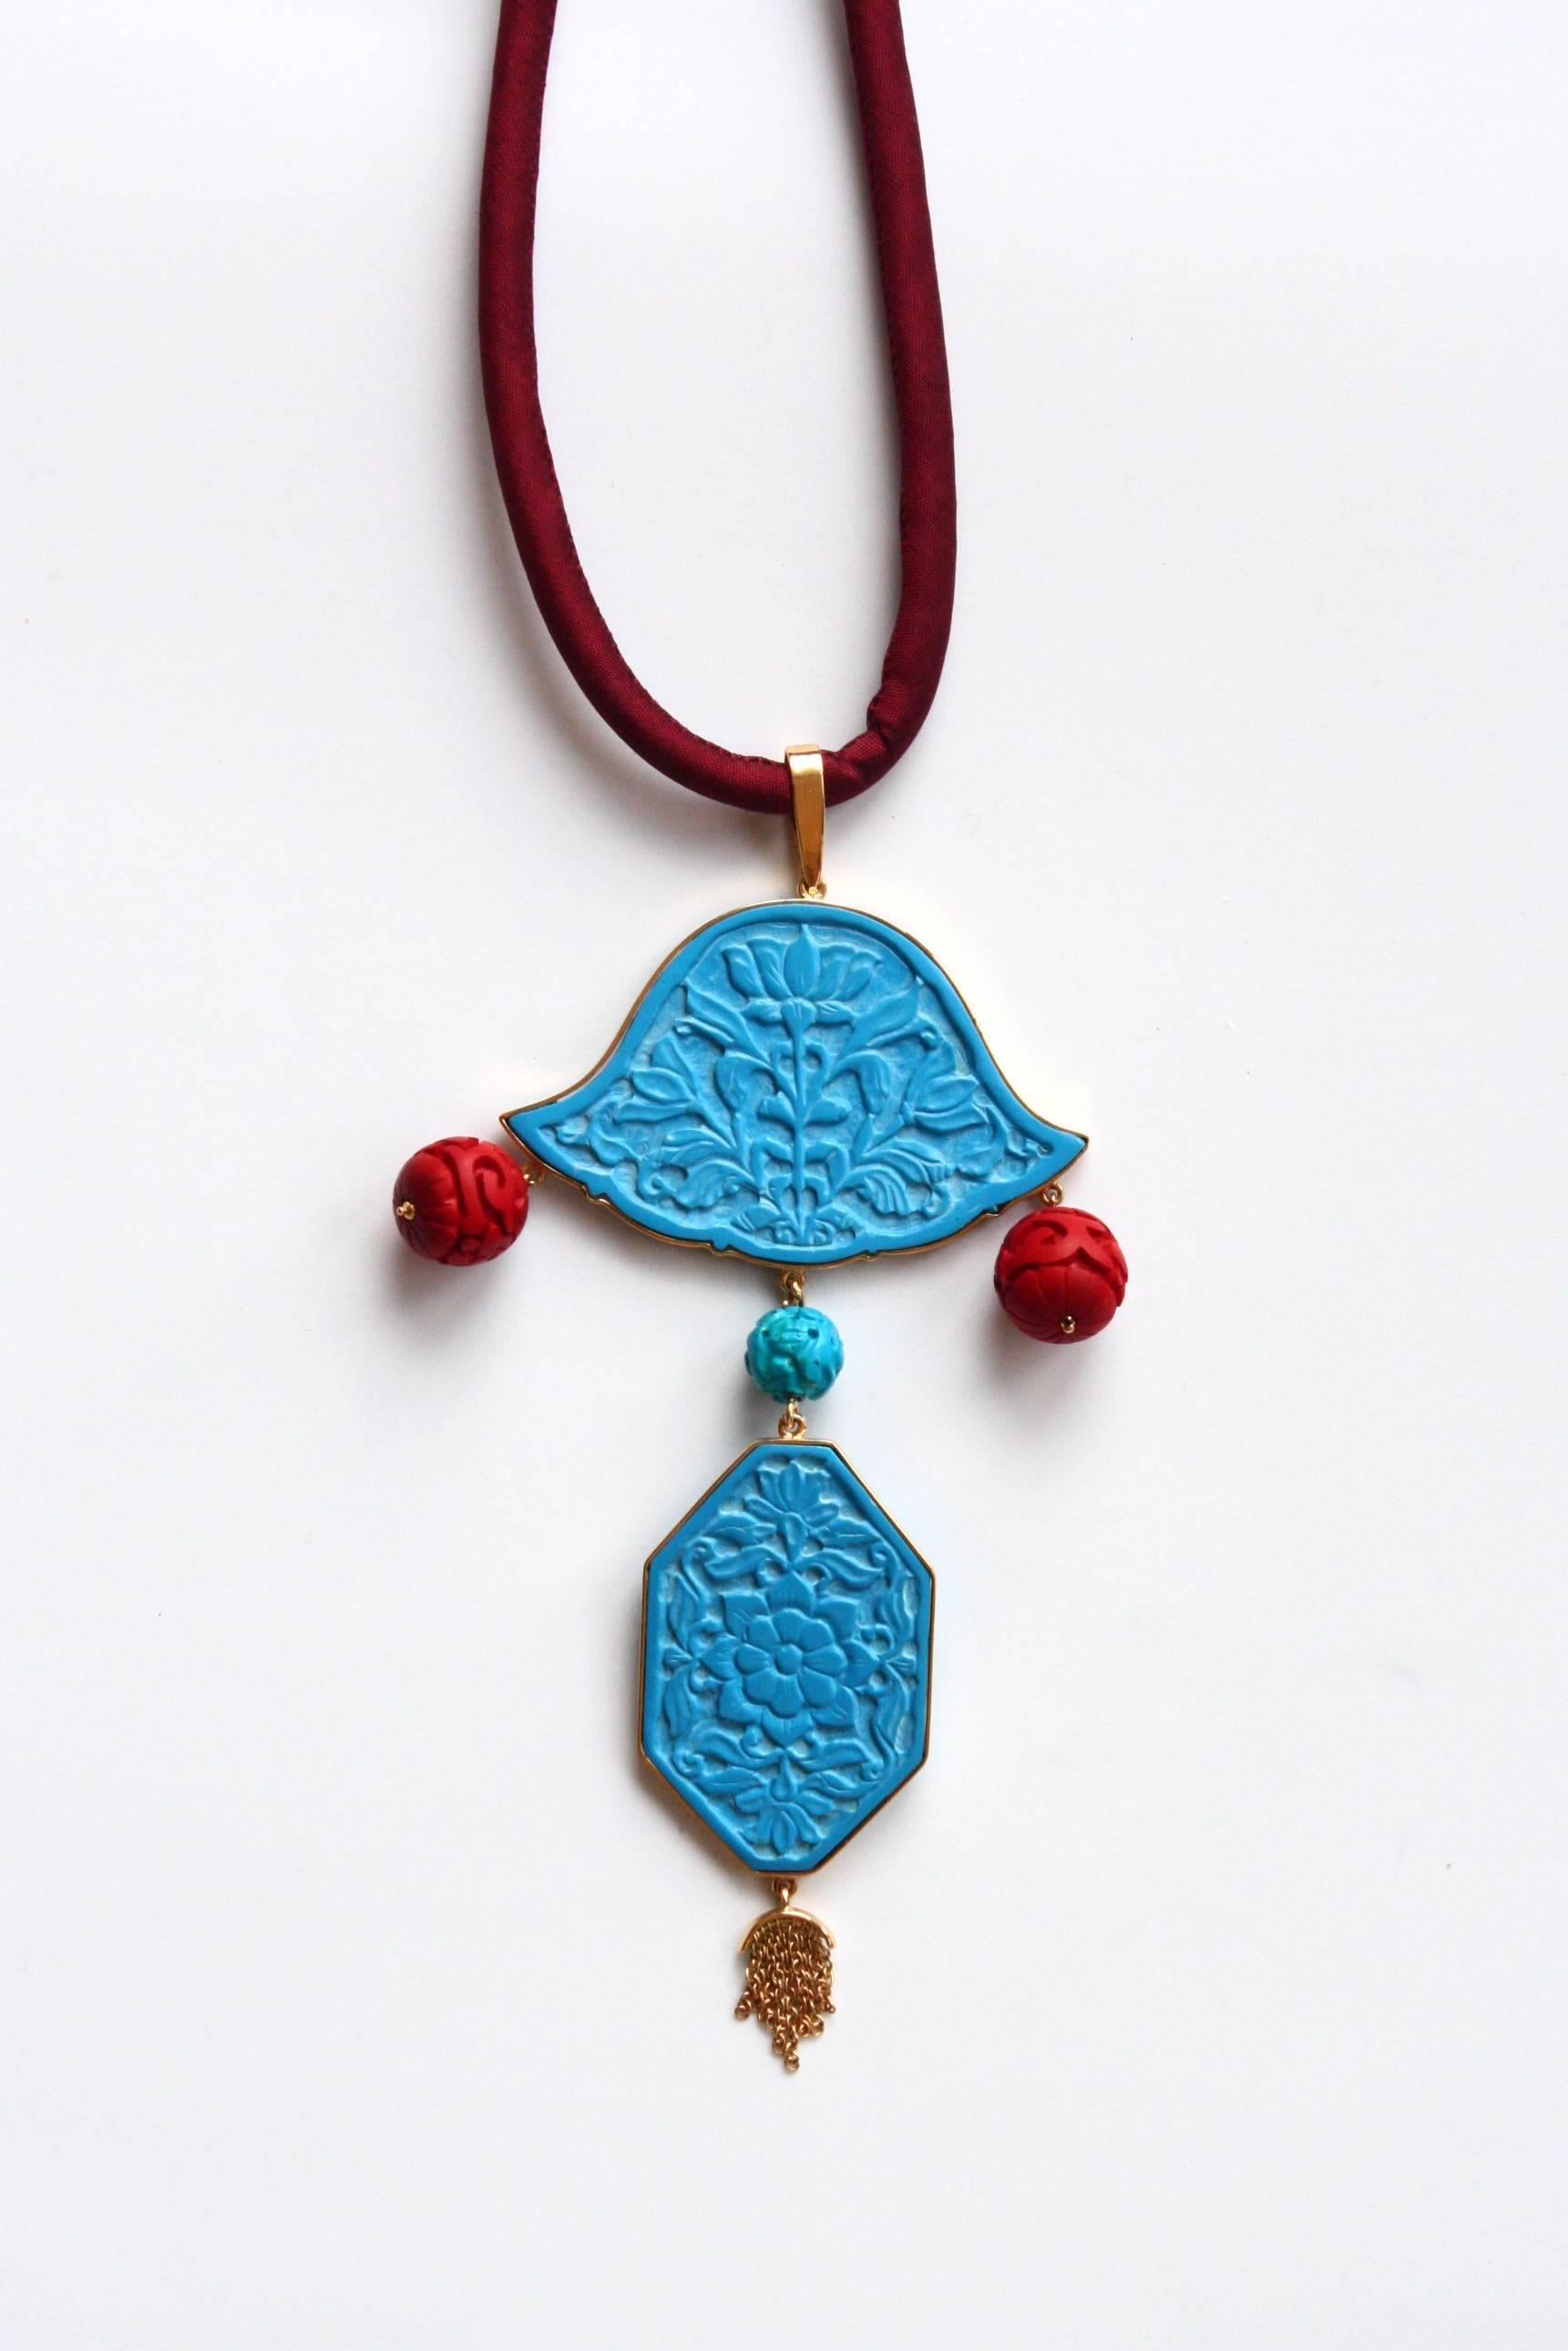 Antiquitäten Indische Türkisplaketten Gold 18,40 gr, Chinesischer Lack. Gesamtlänge 15cm.
Alle Schmuckstücke sind neu und wurden nie zuvor besessen oder getragen. Jeder Artikel kommt in einer schönen Geschenkverpackung in einer eleganten Tasche oder